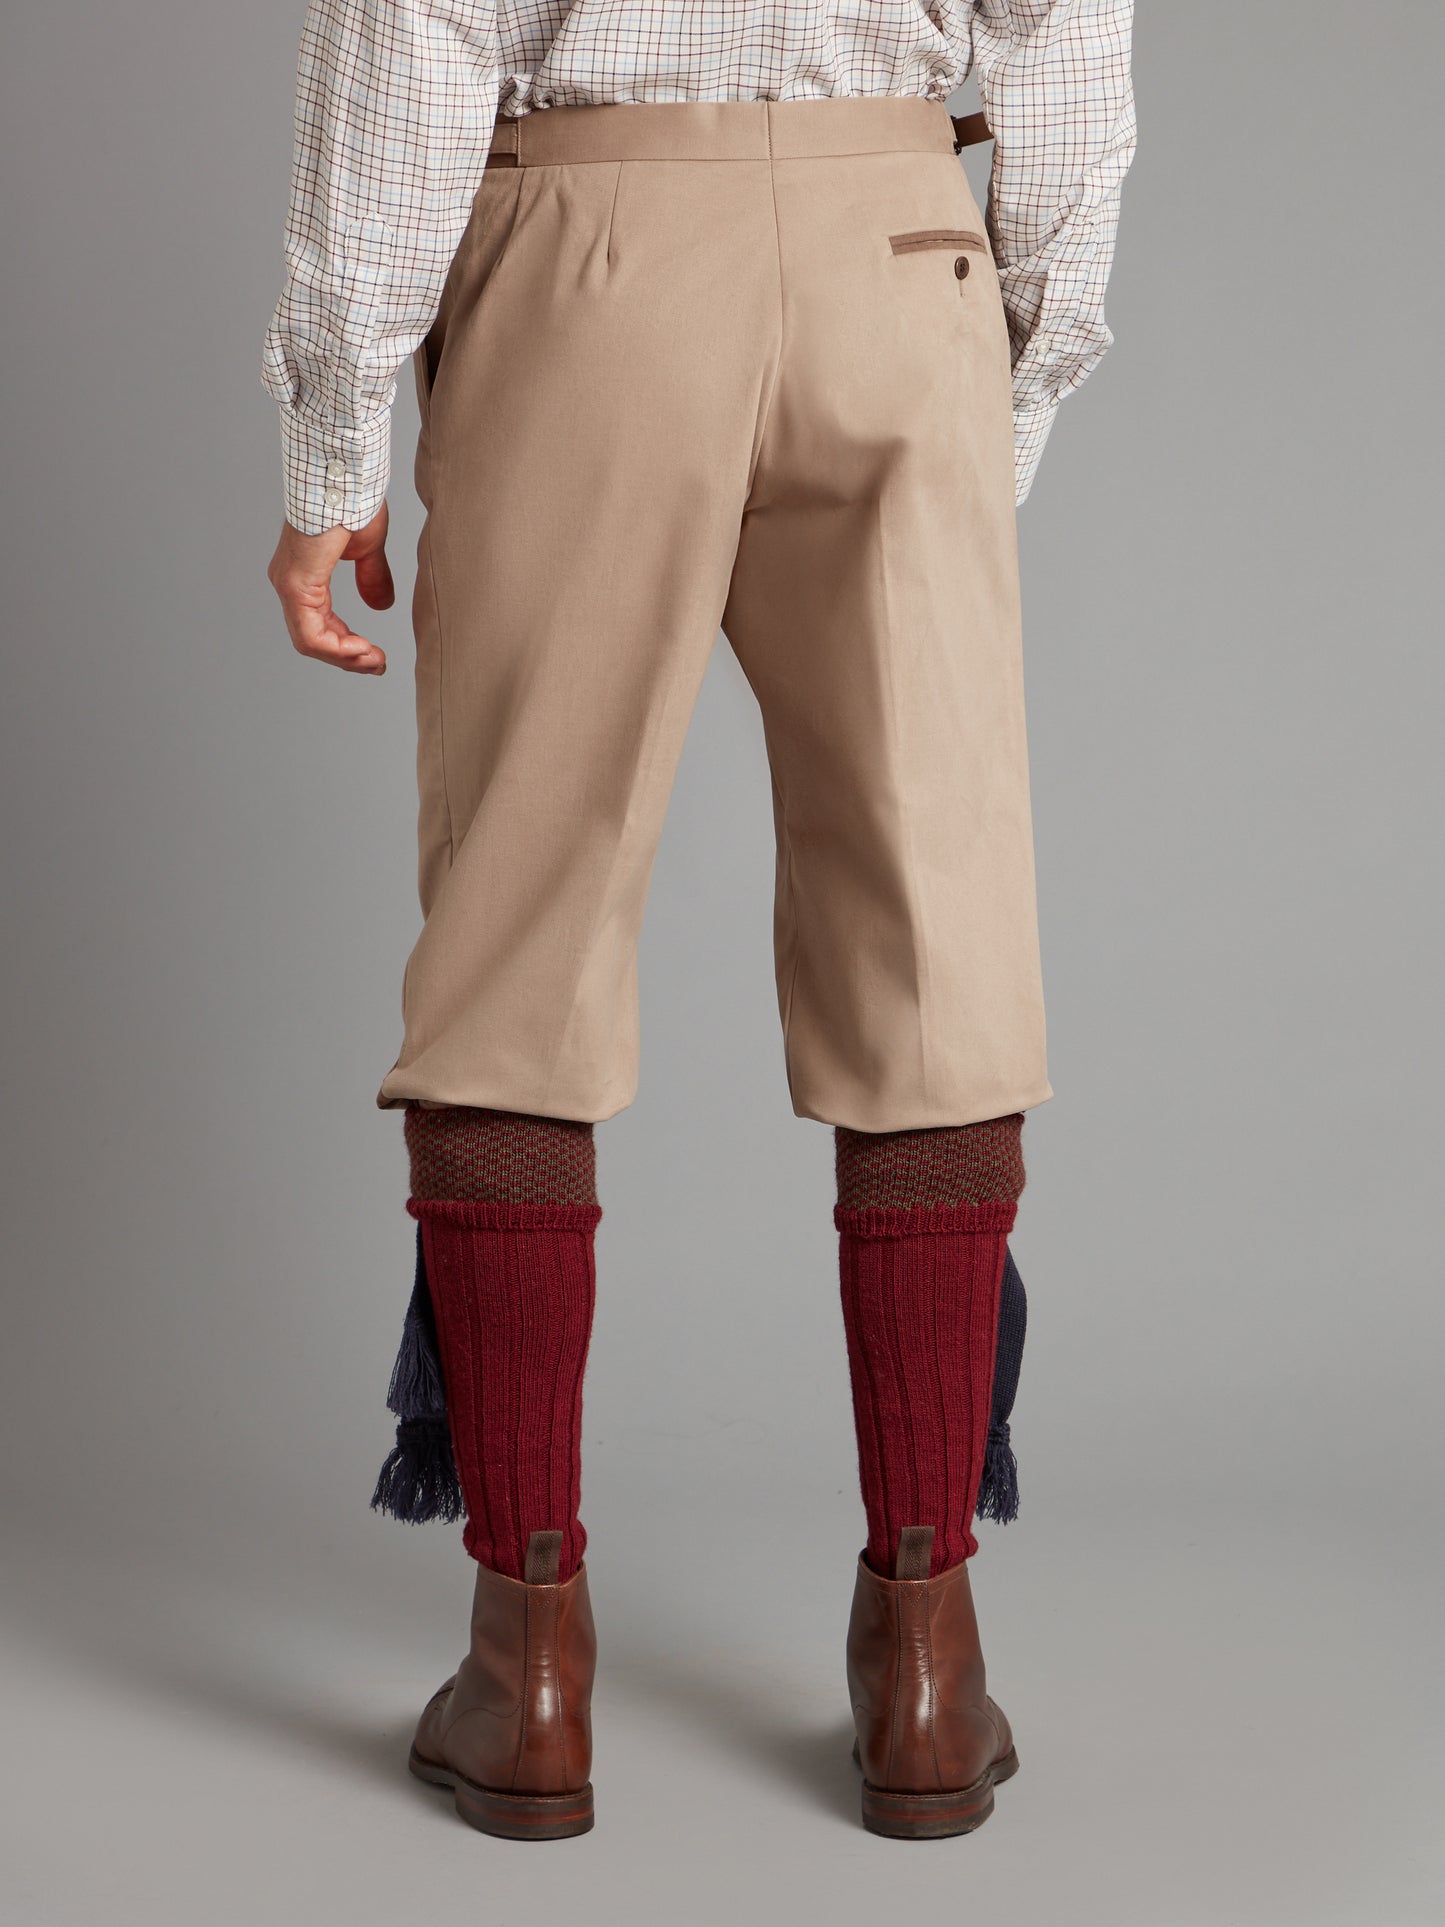 Pleated Trousers - Deveron Tweed, Men's Tweed Trousers